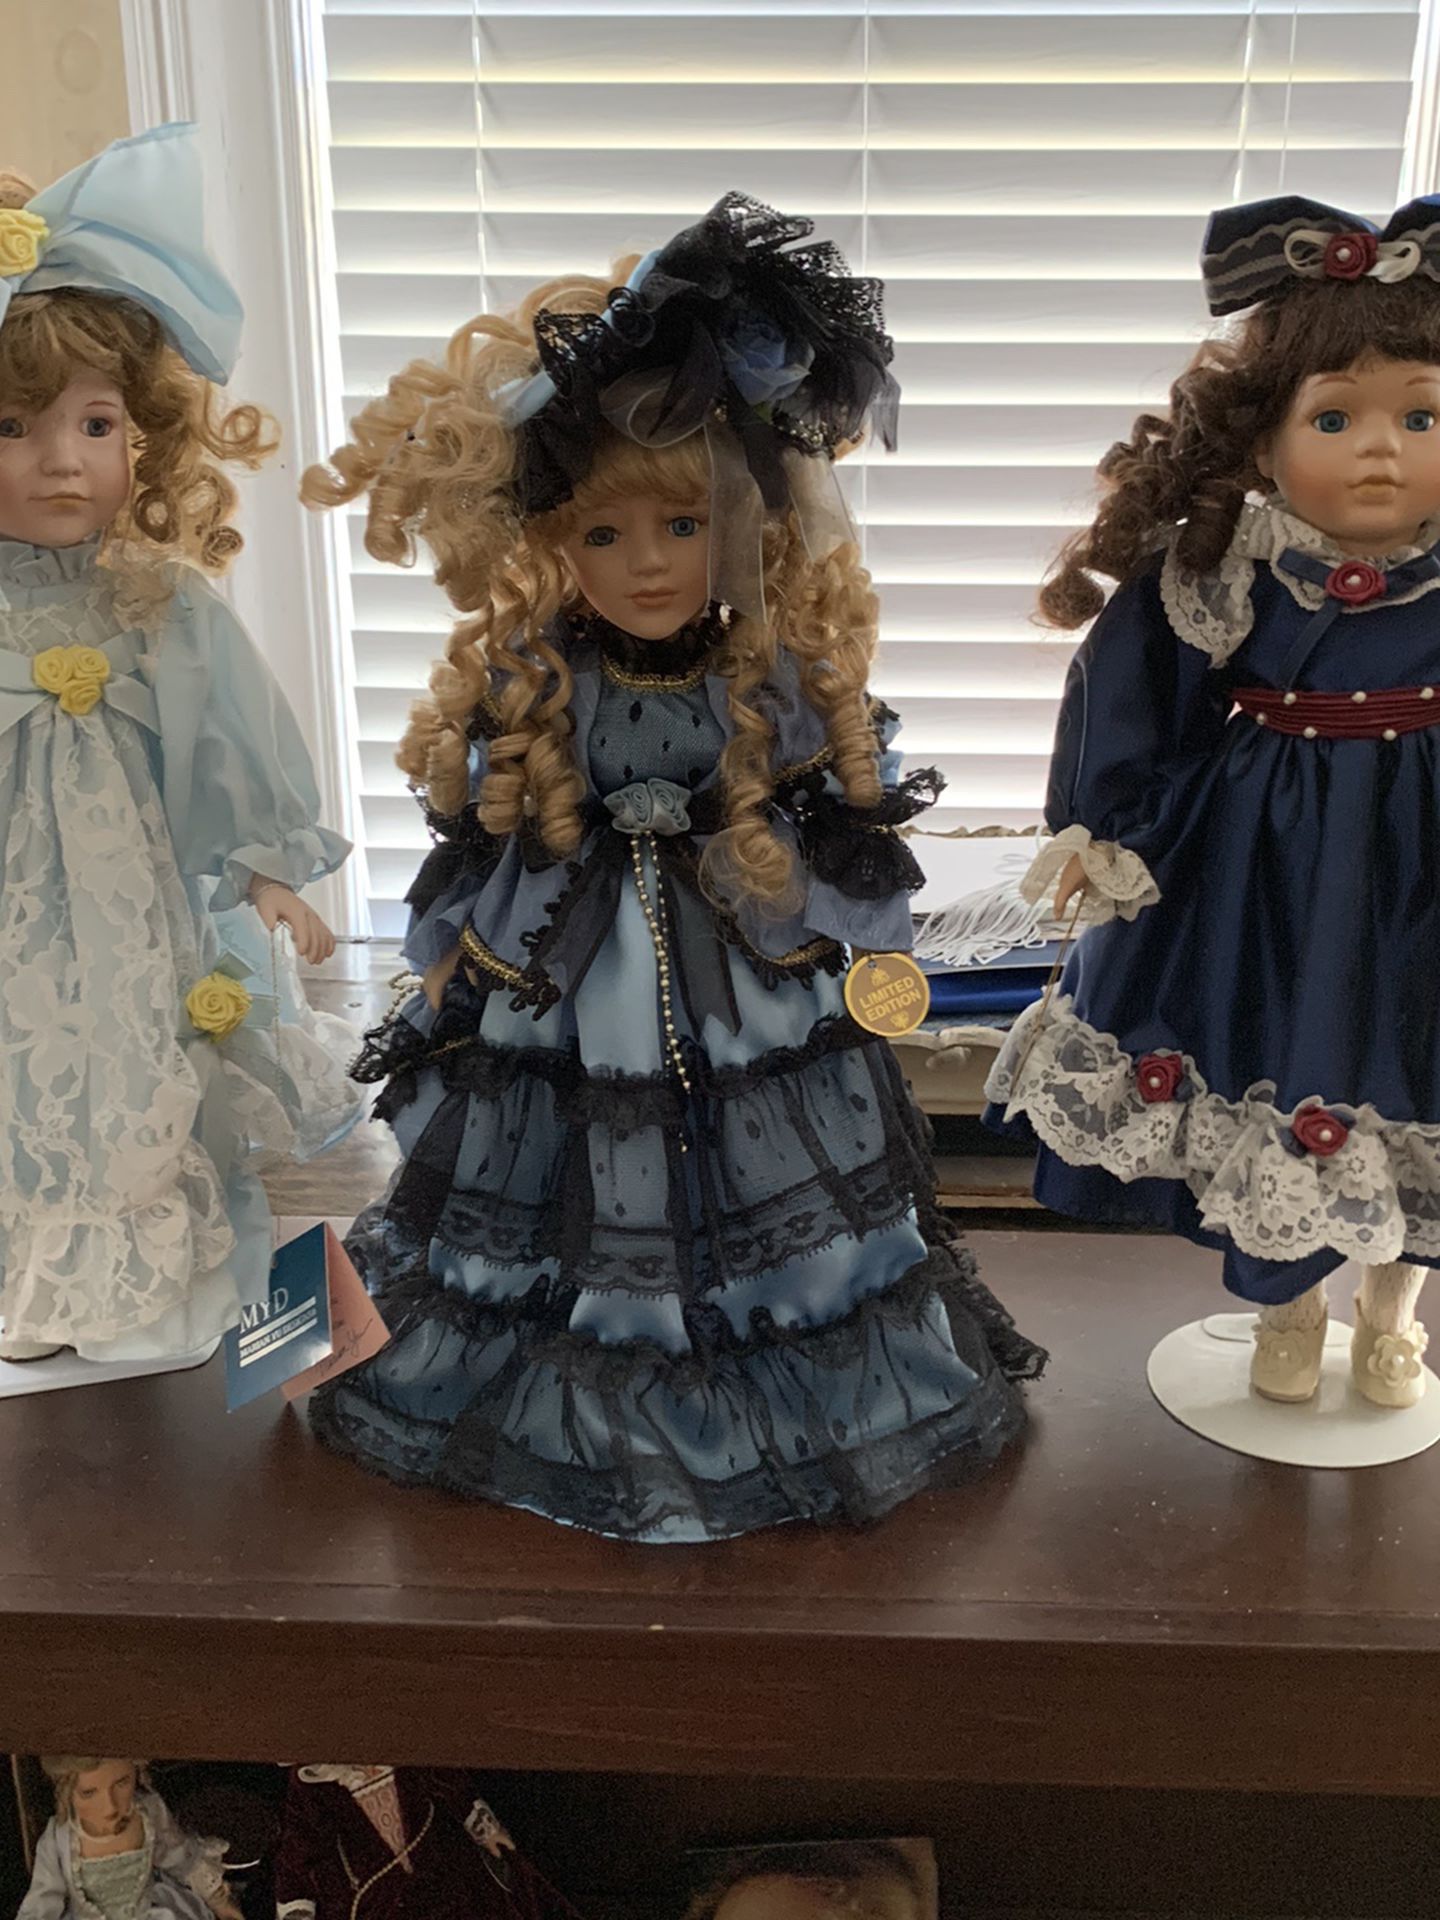 Lovely Vintage Dolls! $25